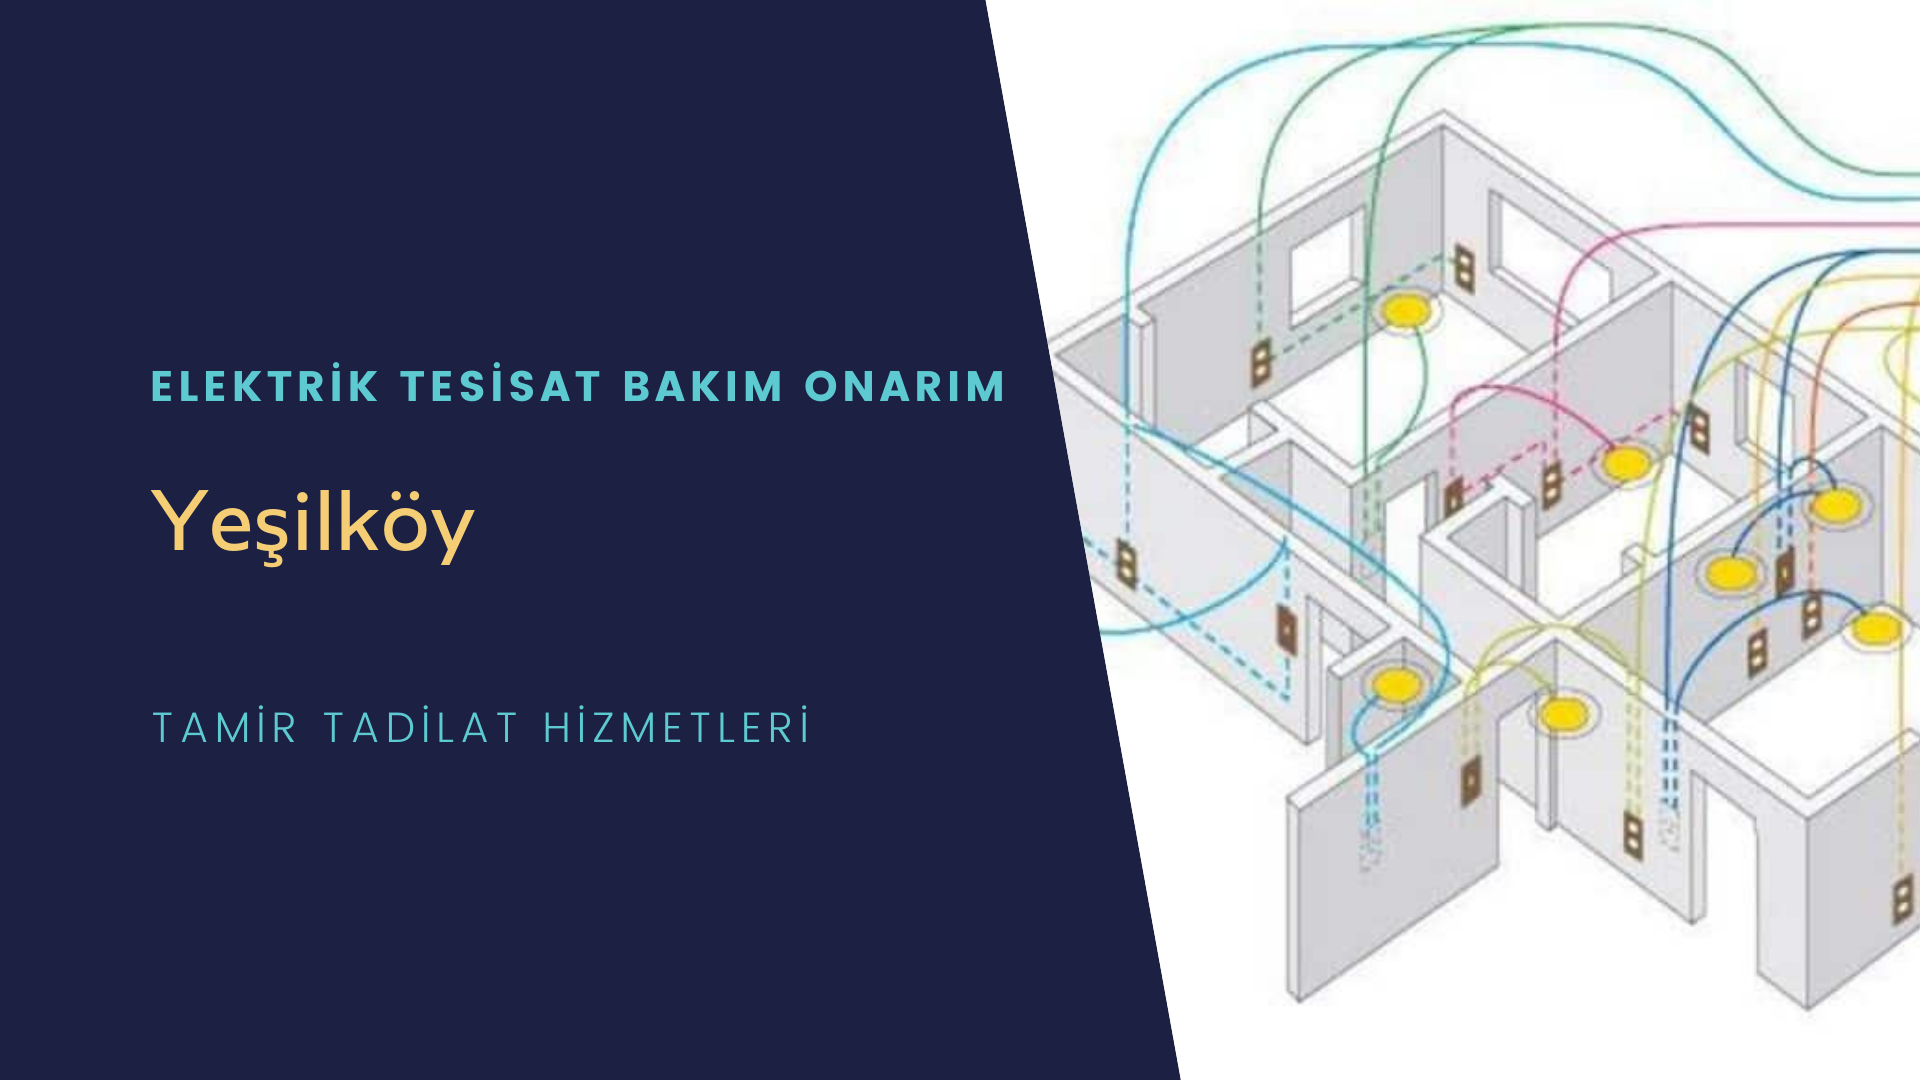 Yeşilköy'de elektrik tesisatı ustalarımı arıyorsunuz doğru adrestenizi Yeşilköy elektrik tesisatı ustalarımız 7/24 sizlere hizmet vermekten mutluluk duyar.